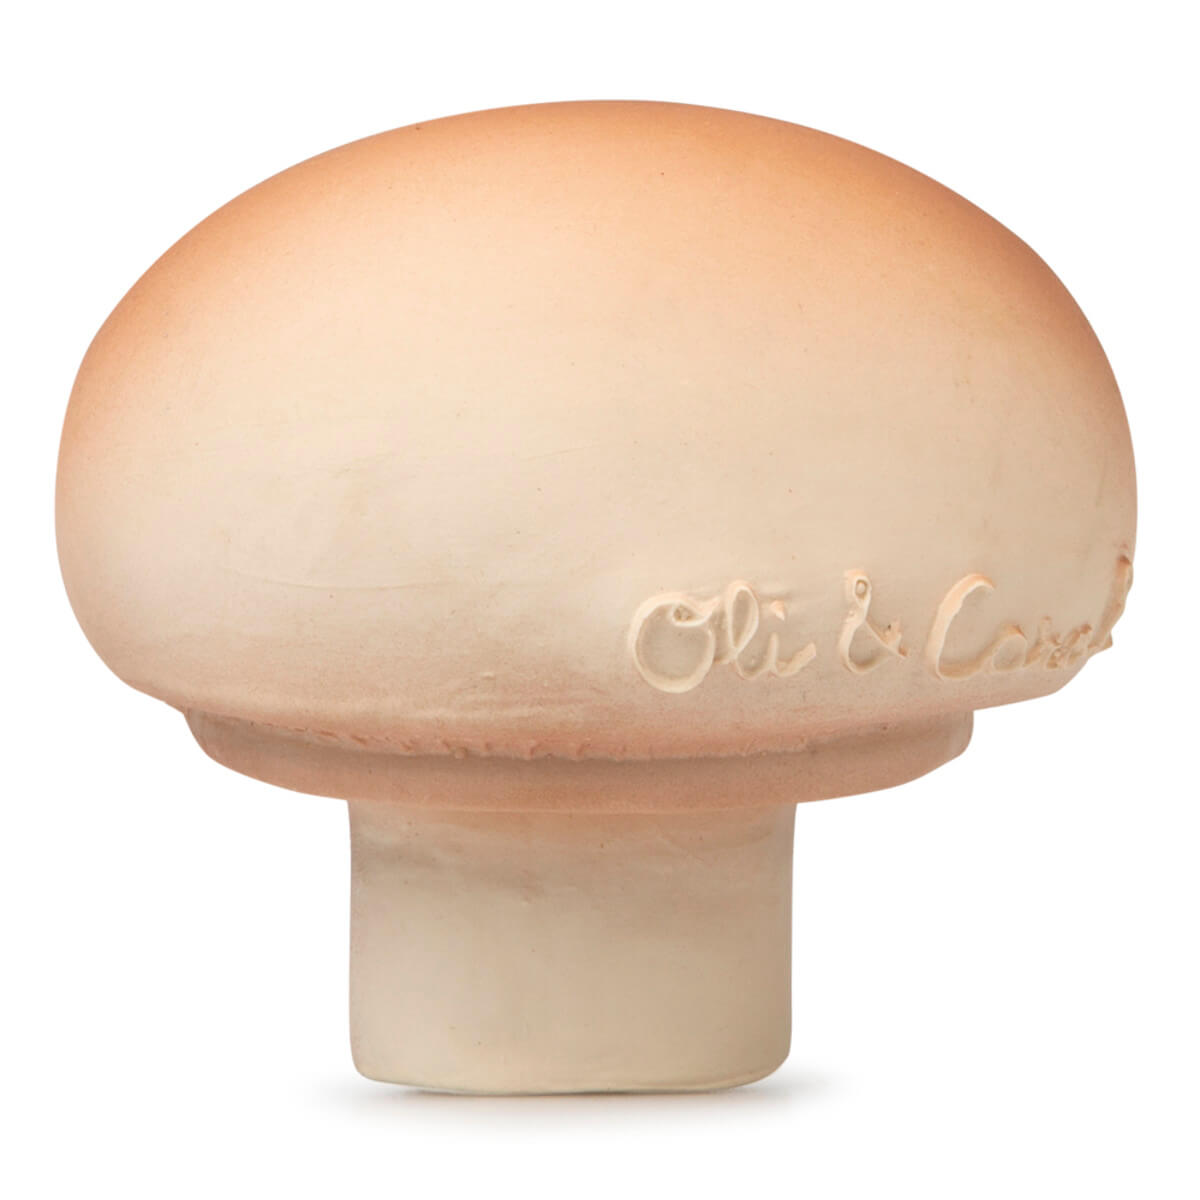 Oli & Carol Manolo Mushroom Teether Toy